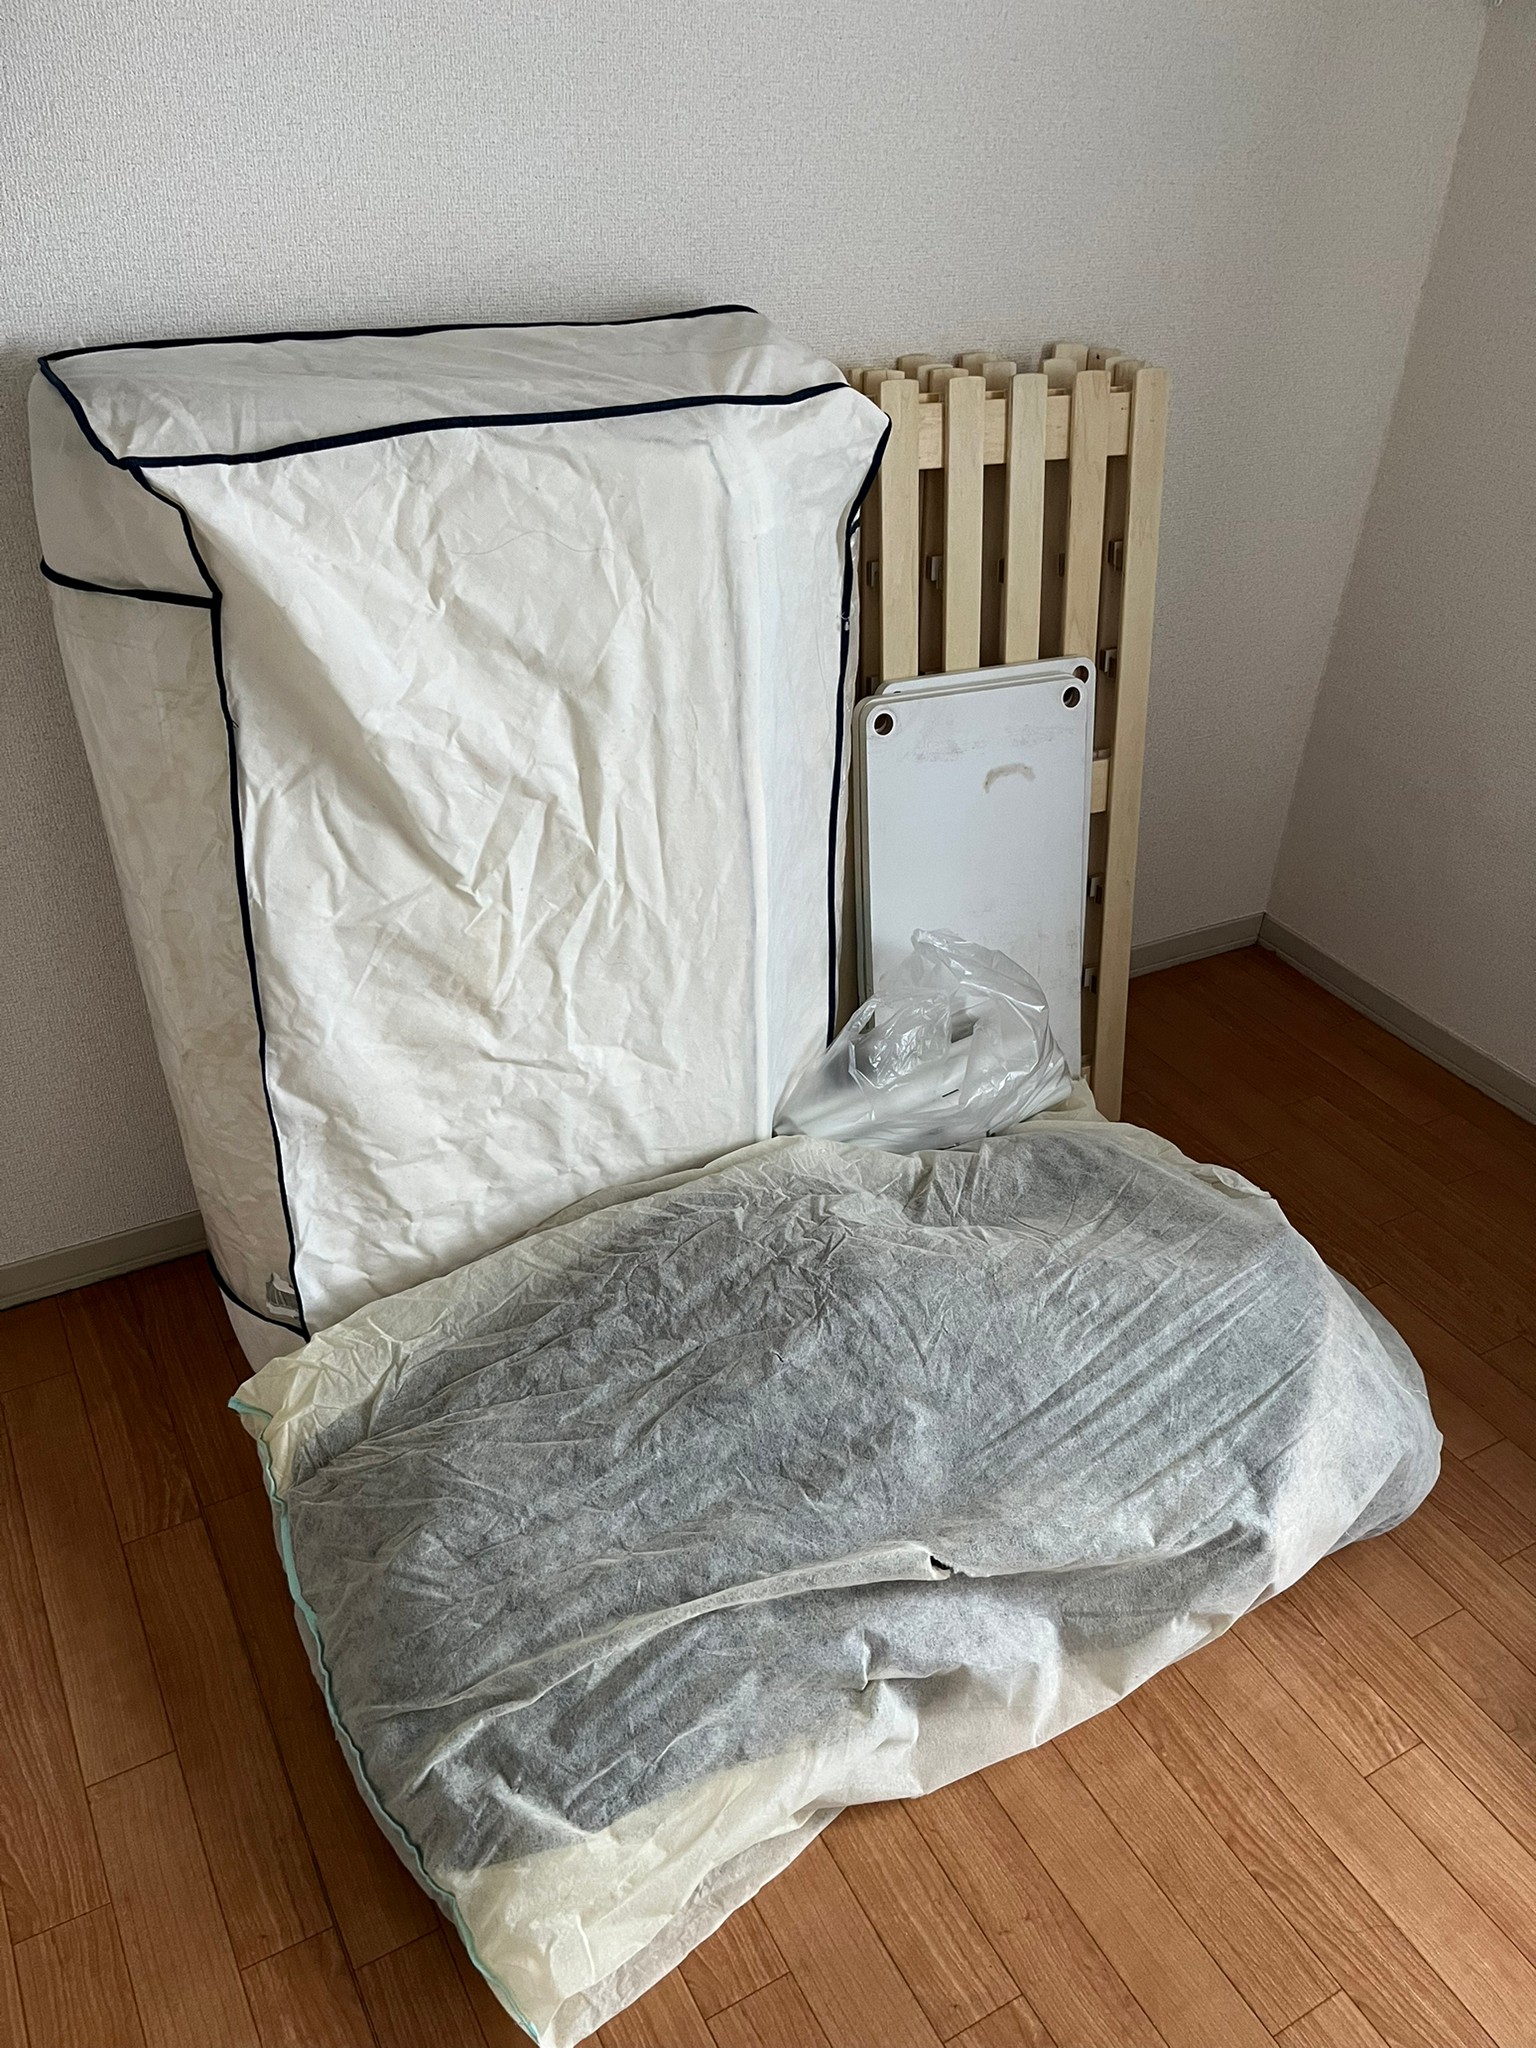 ベッド、布団の回収前の状態